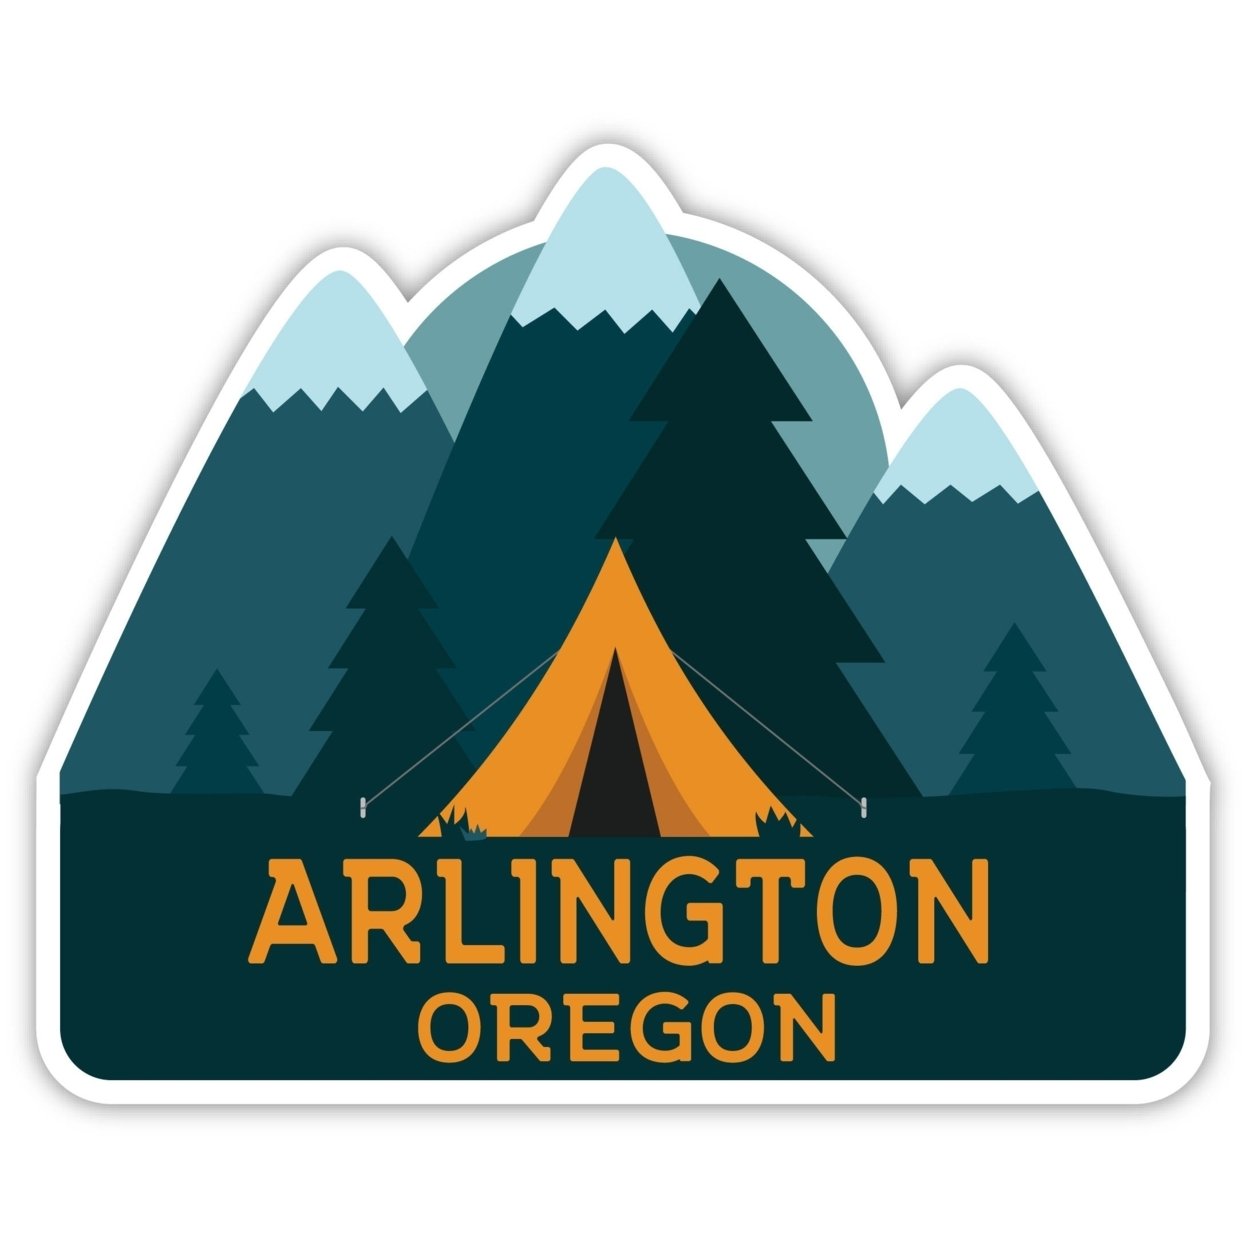 Arlington Oregon Souvenir Decorative Stickers (Choose Theme And Size) - Single Unit, 2-Inch, Tent